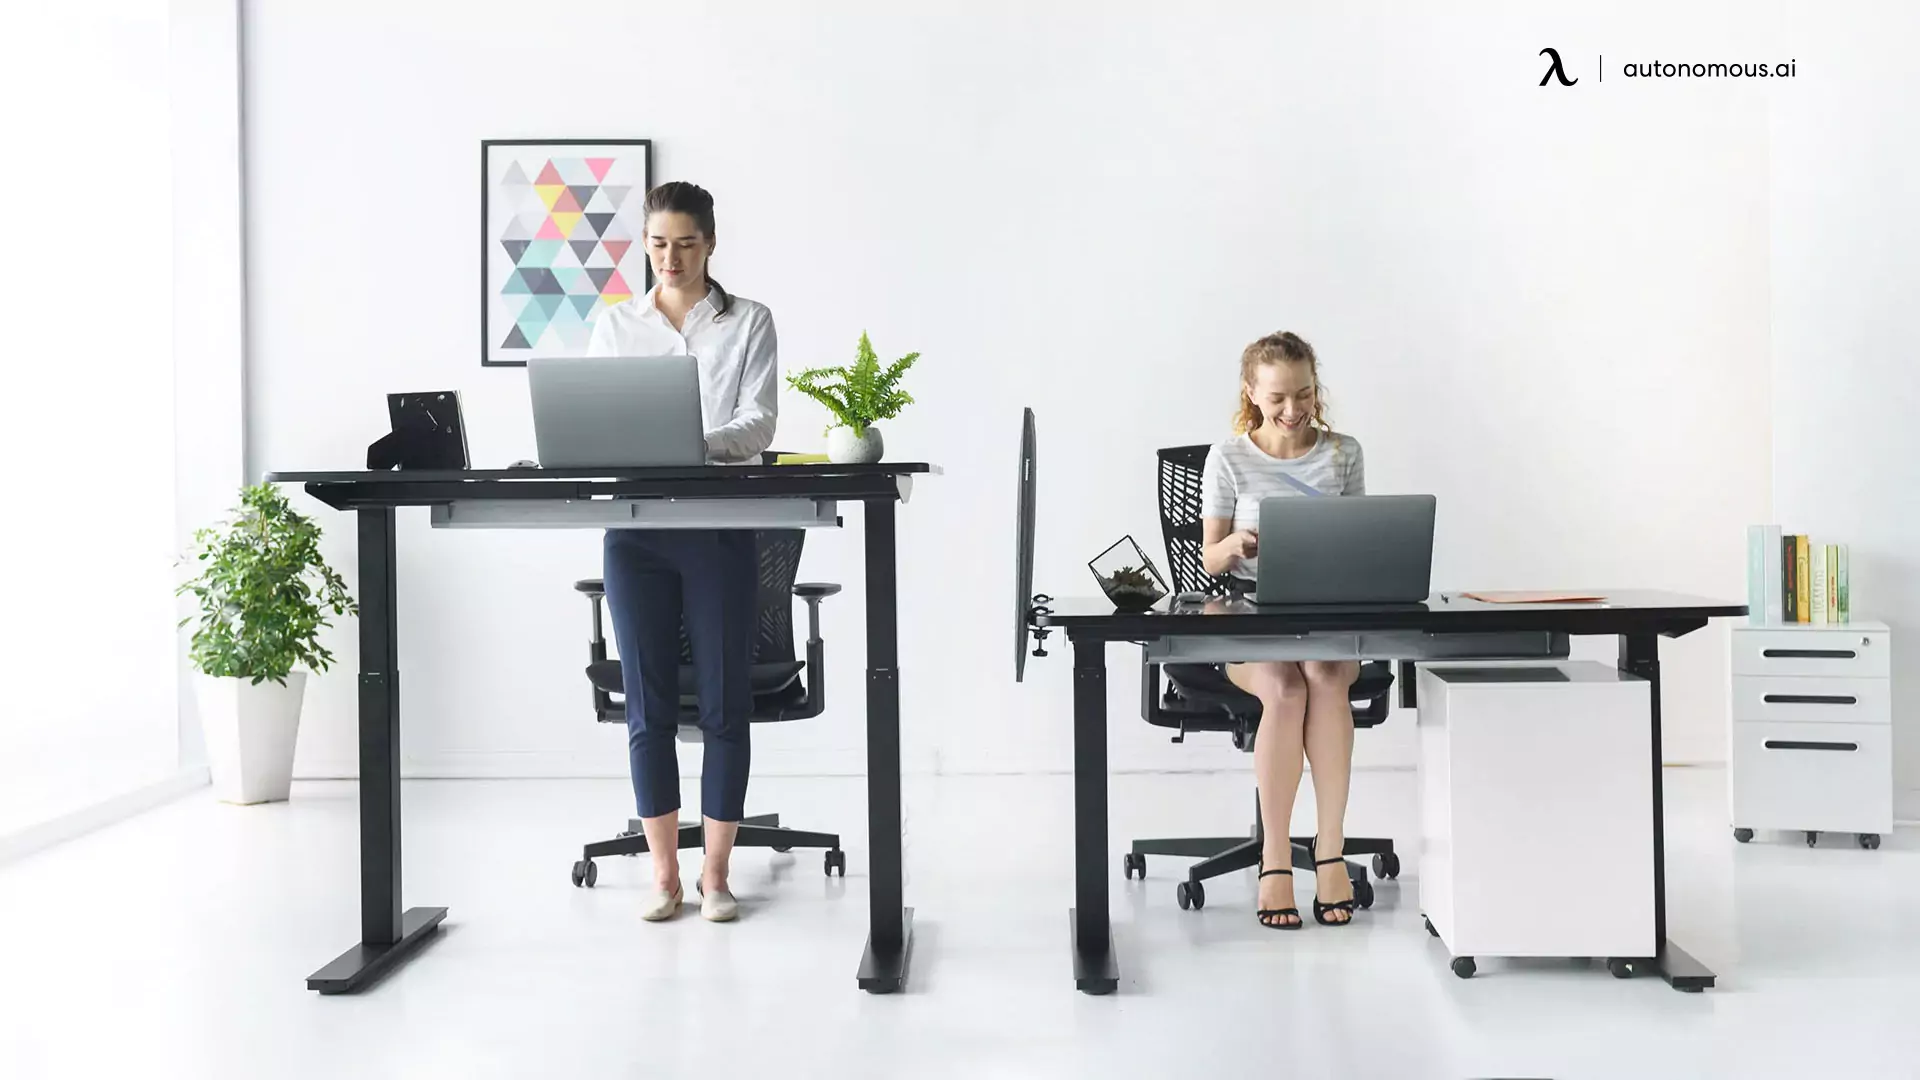 Autonomous standing desk brand